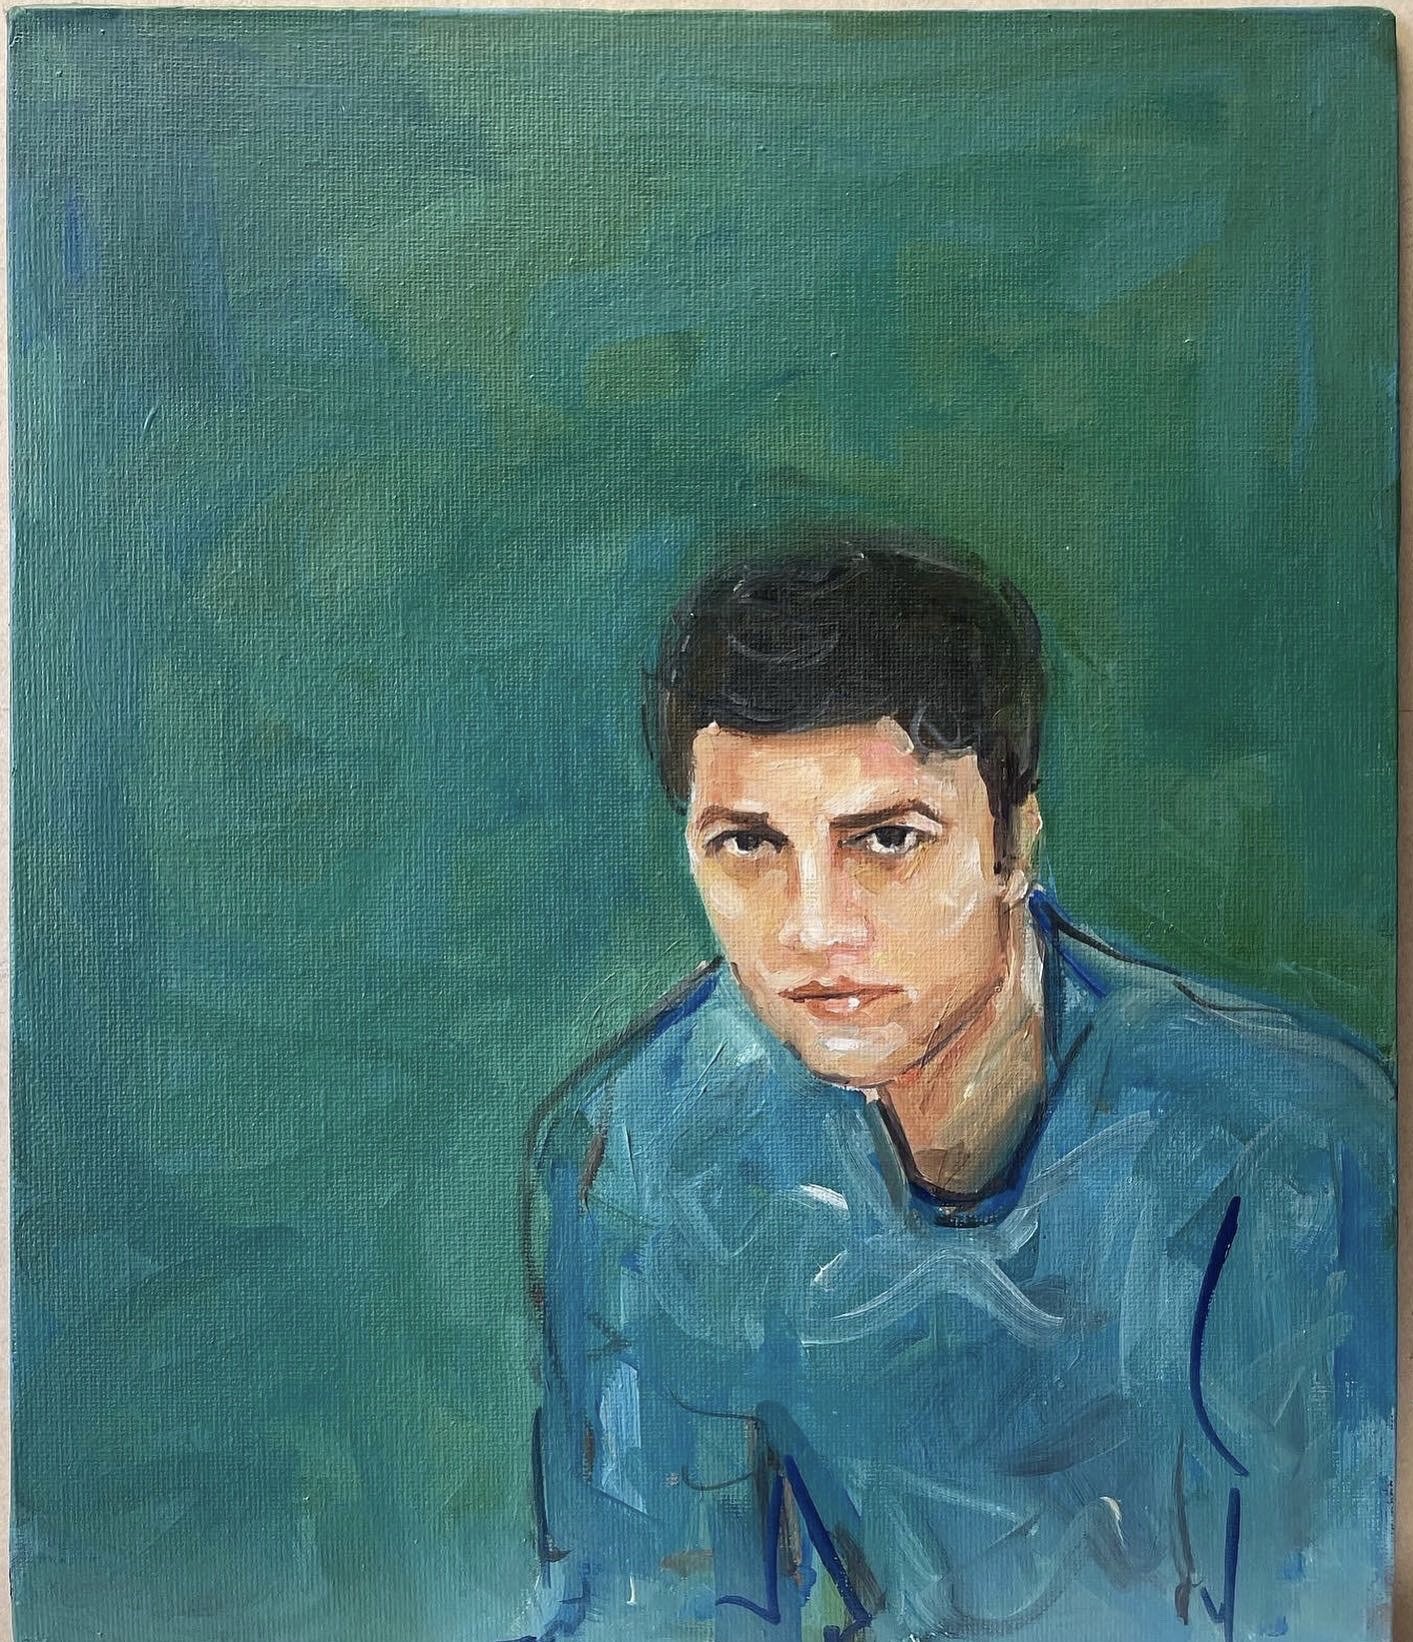 Dariush Alizadeh by Anahita Rezvanirad